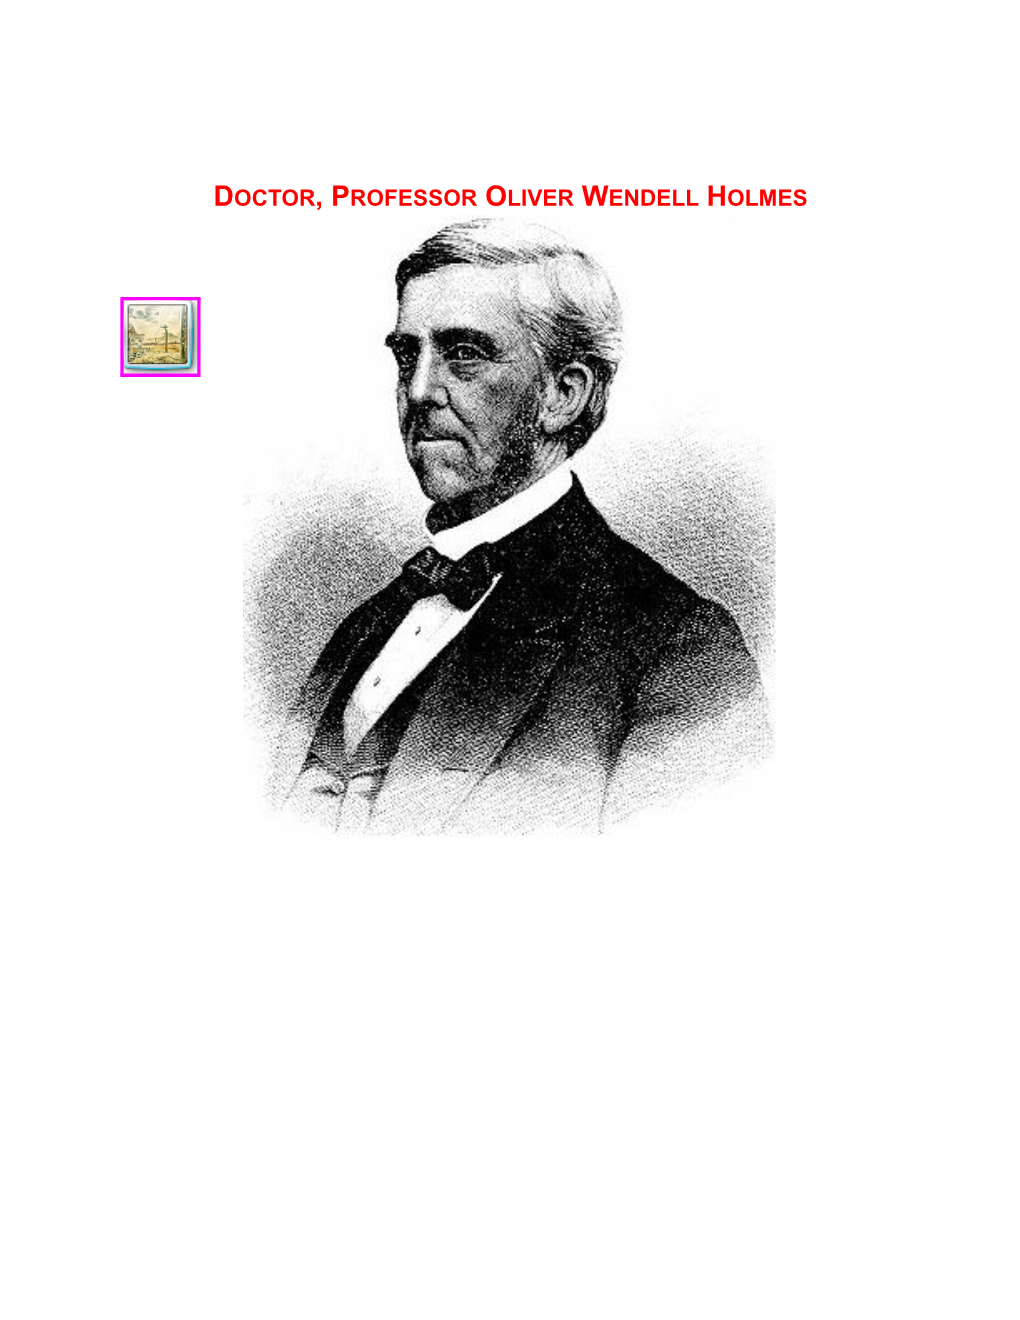 Dr. Oliver Wendell Holmes